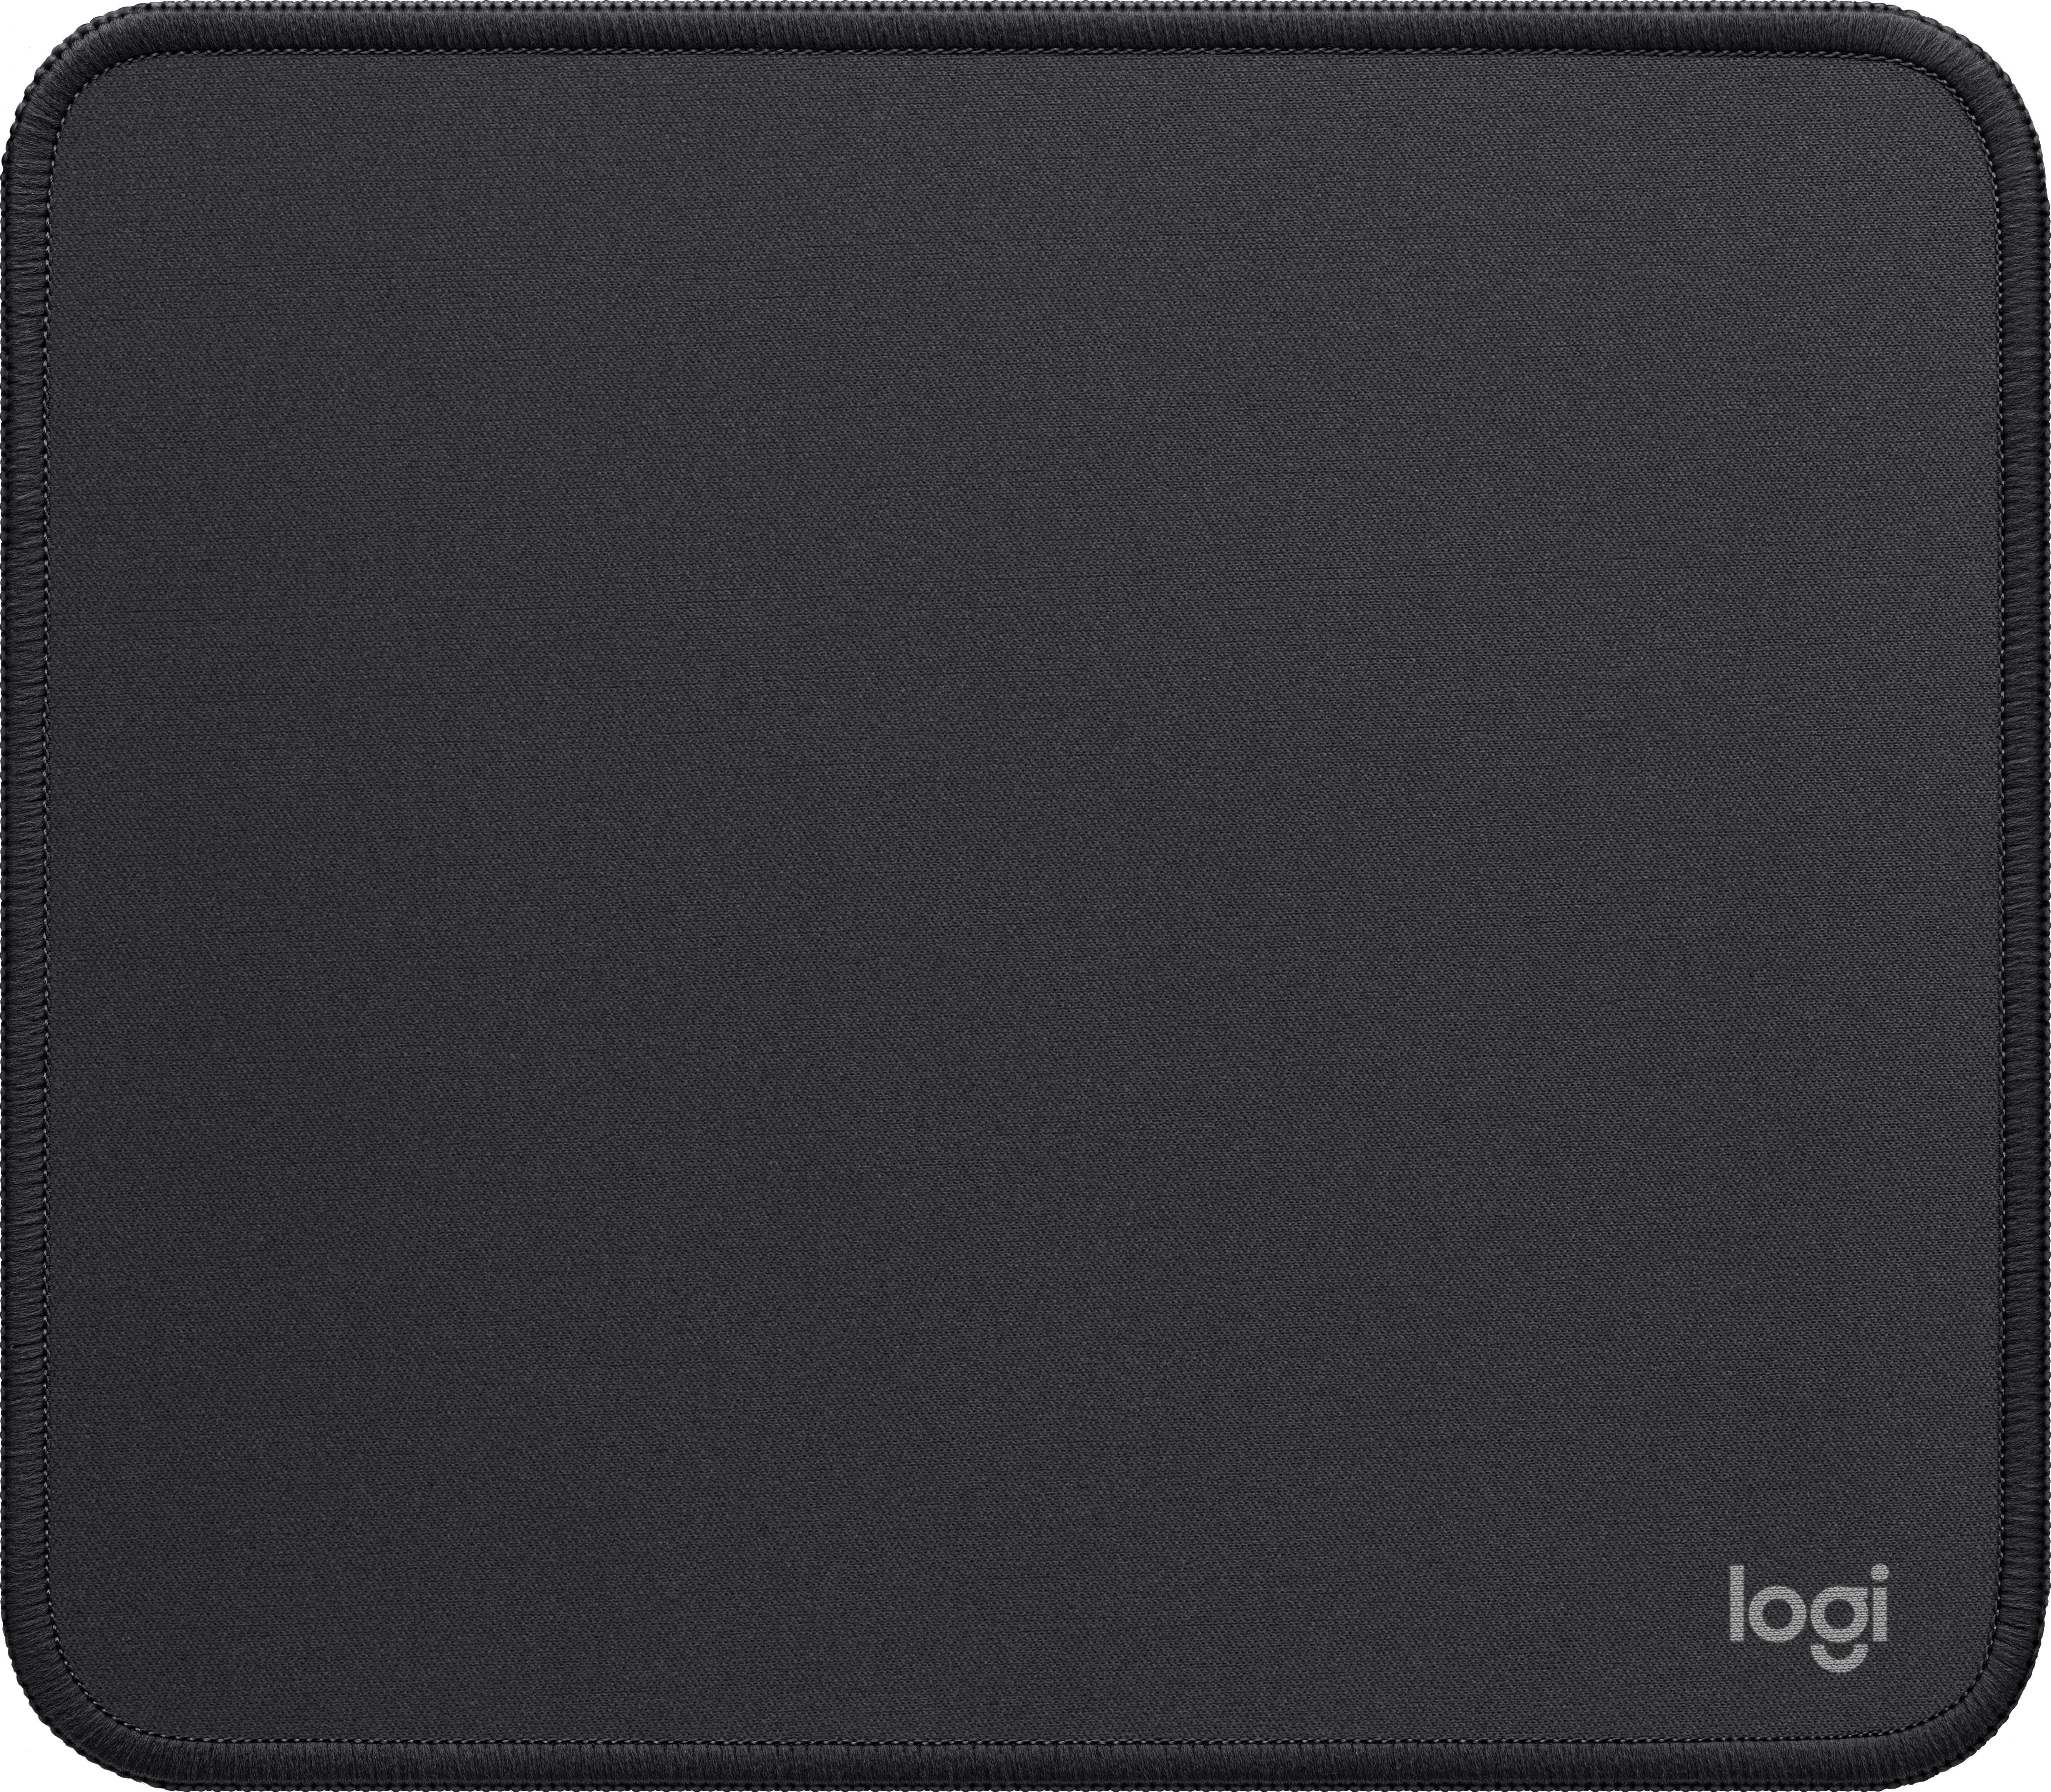 Logitech Desk Mat Studio Series - Mouse pad - graphite (956-000049